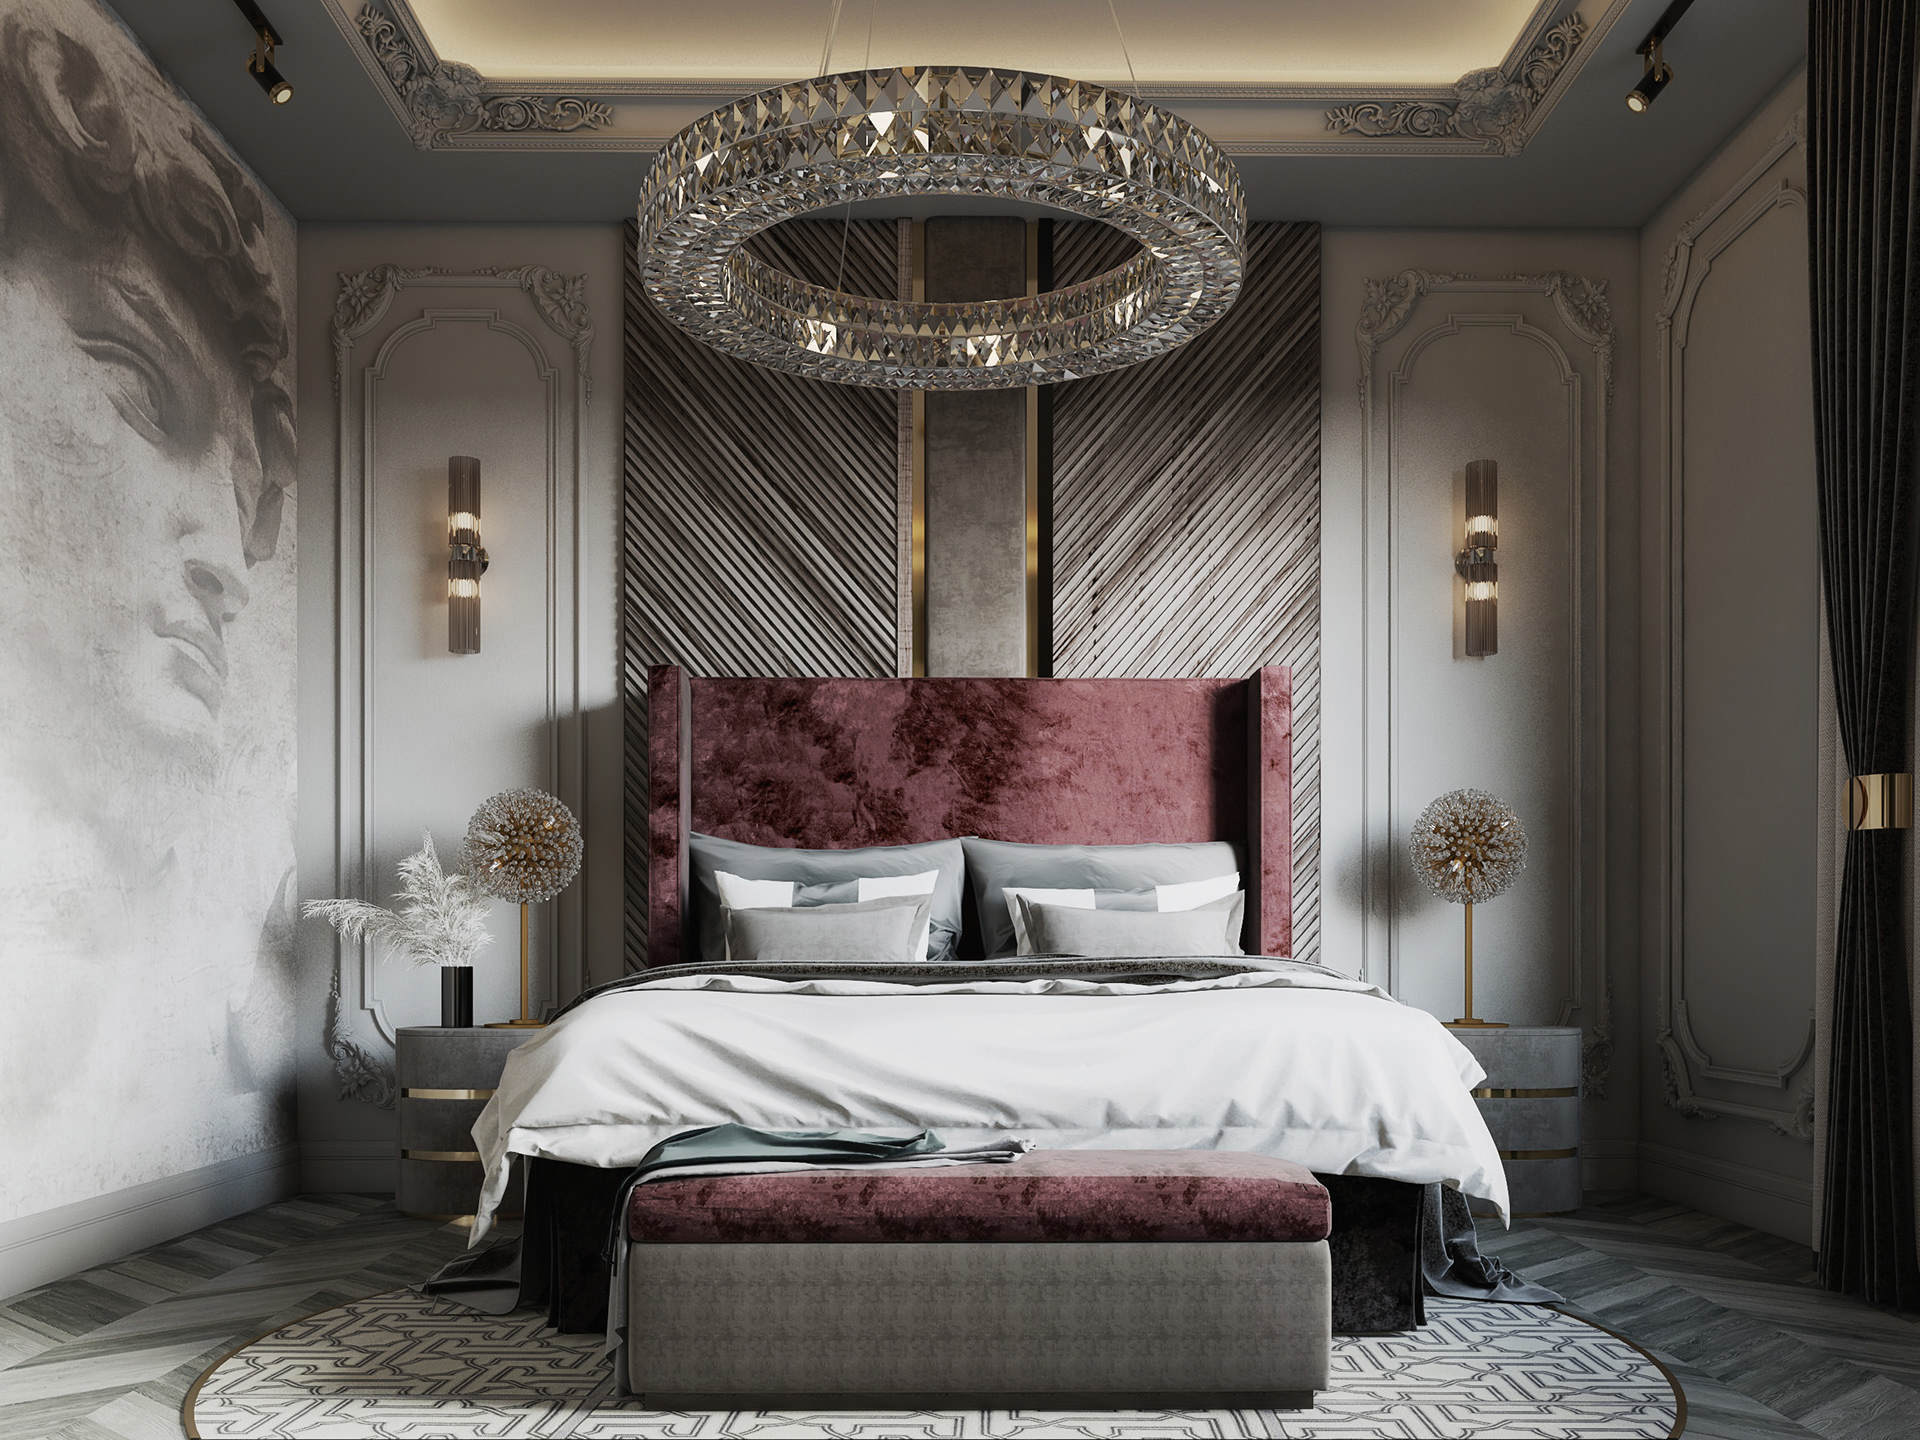 Giường ngủ tân cổ điển với vẻ đẹp pha trộn giữa nét hoài cổ và sự hiện đại